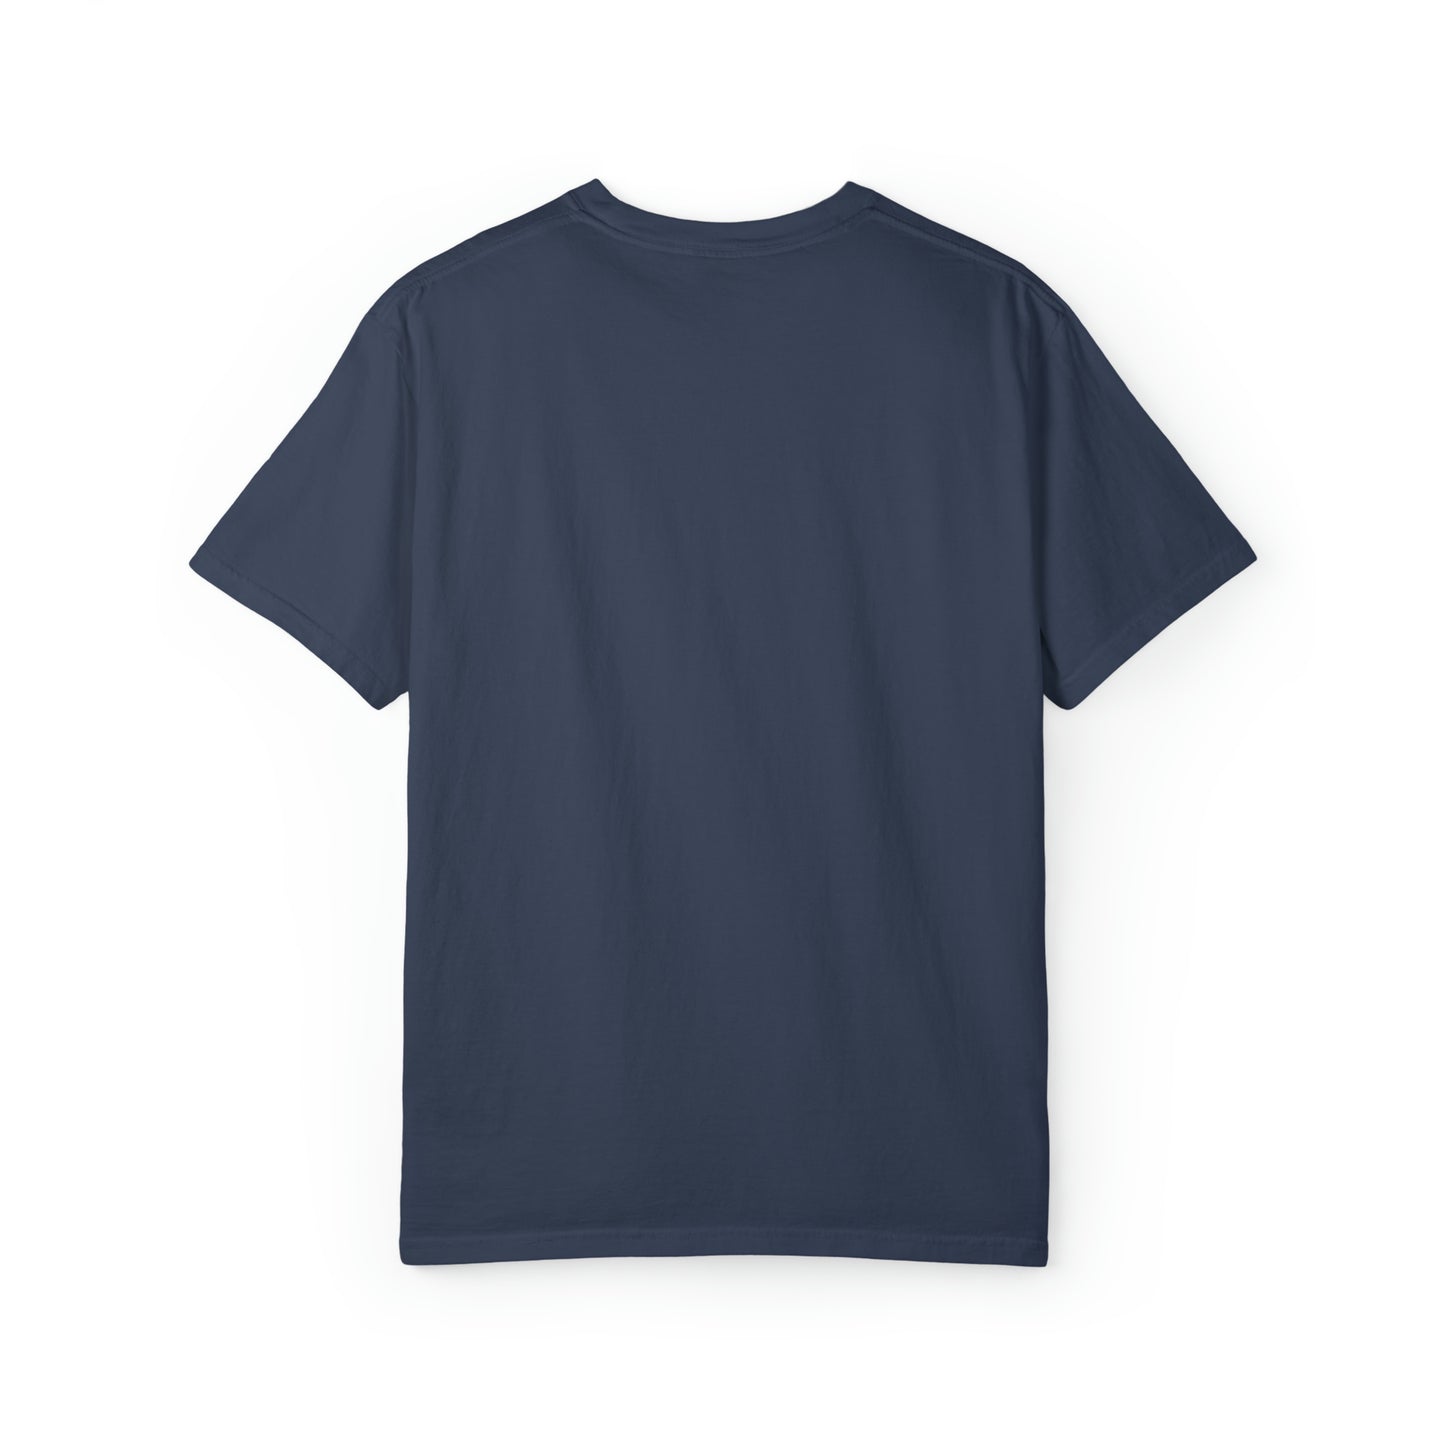 best dancer ever t shirt gift shirt Unisex Garment-Dyed T-shirt